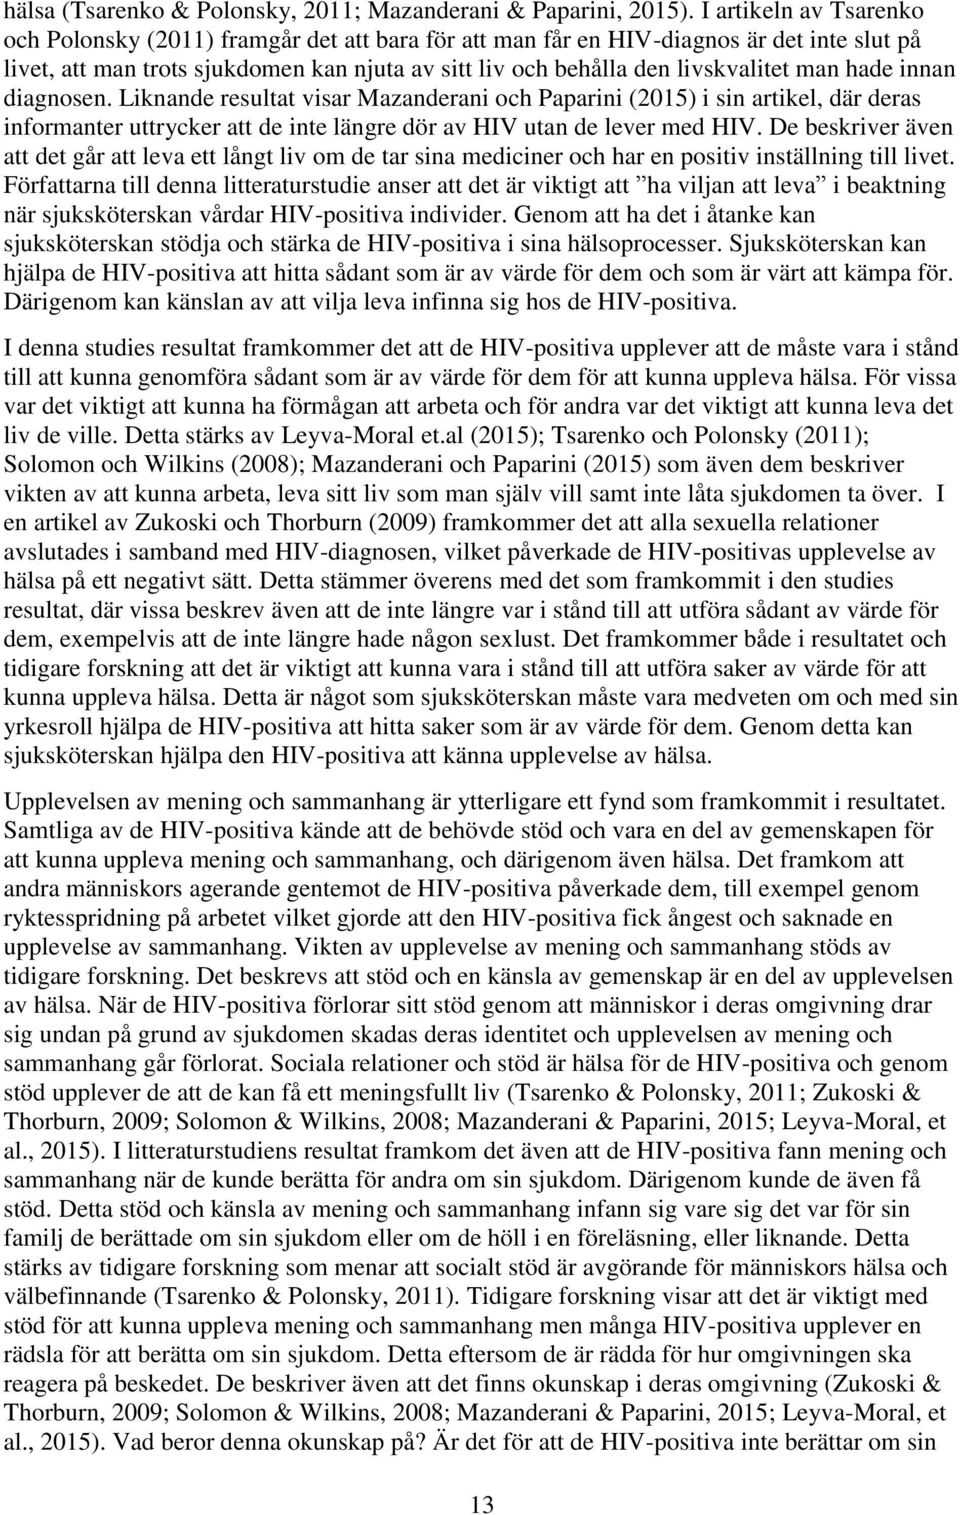 man hade innan diagnosen. Liknande resultat visar Mazanderani och Paparini (2015) i sin artikel, där deras informanter uttrycker att de inte längre dör av HIV utan de lever med HIV.